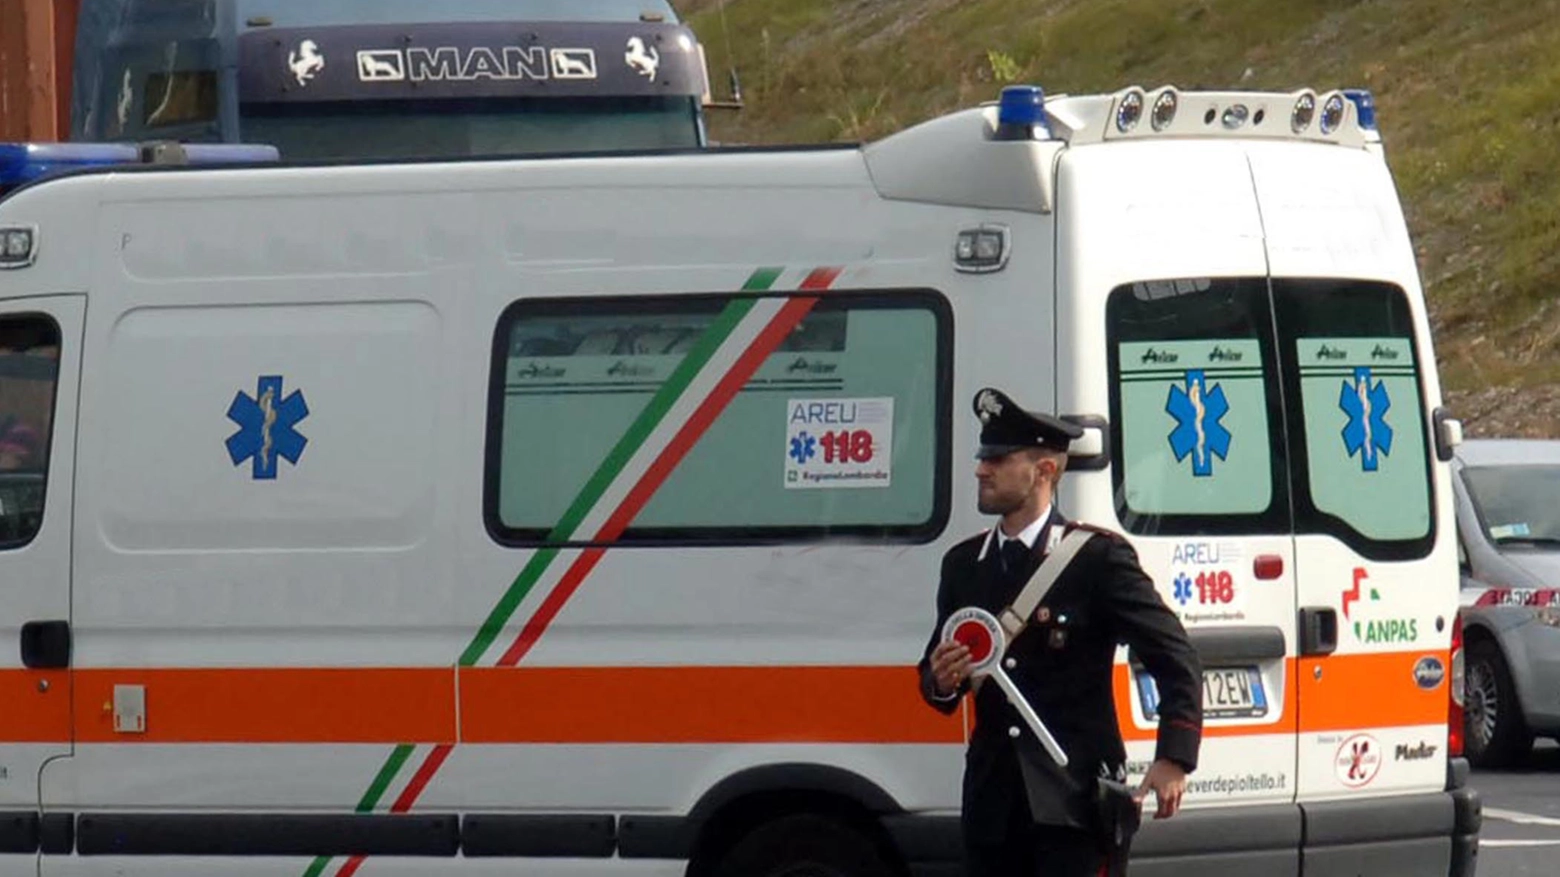 Carabinieri e ambulanza sono intervenuti a Voghera (foto archivio)